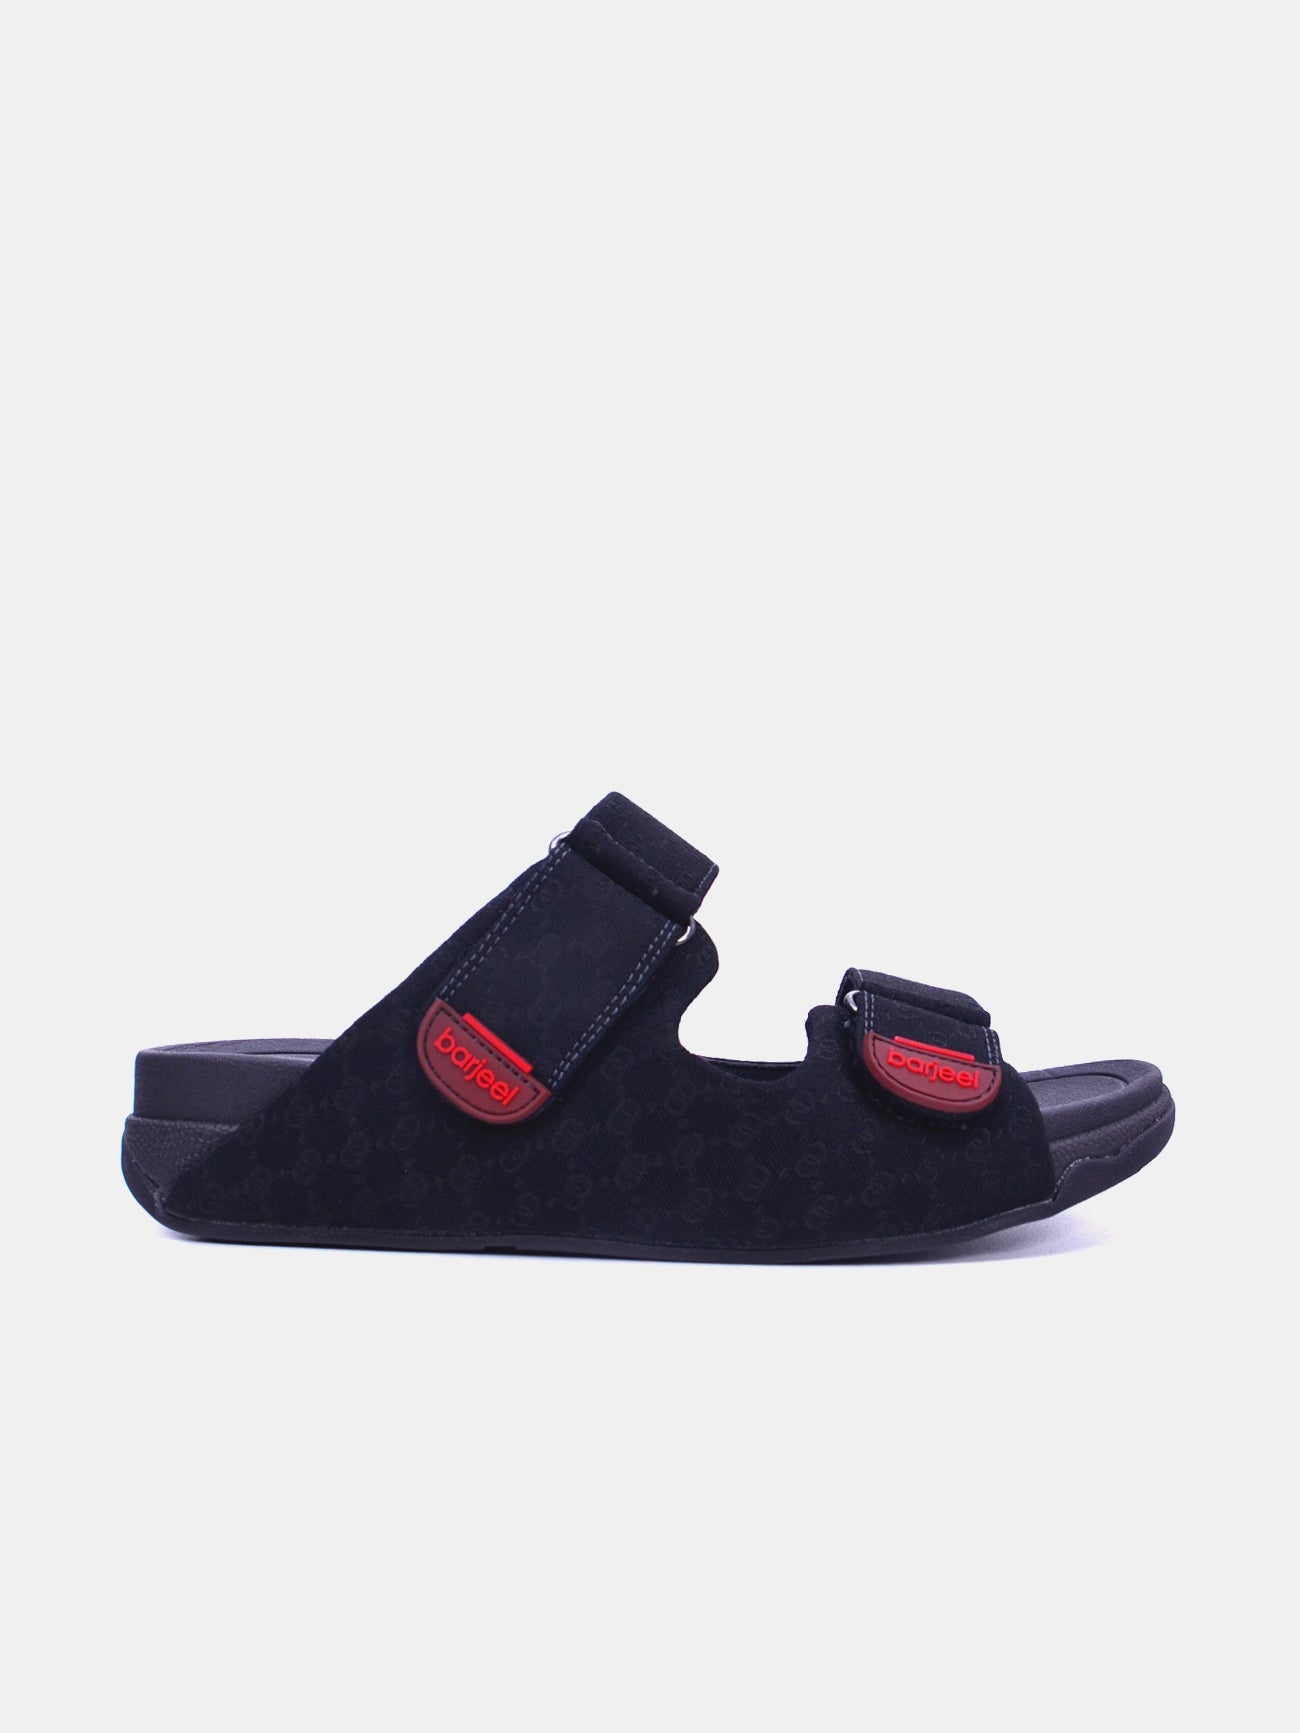 Barjeel Uno 20272-2 Men's Arabic Sandals #color_Black